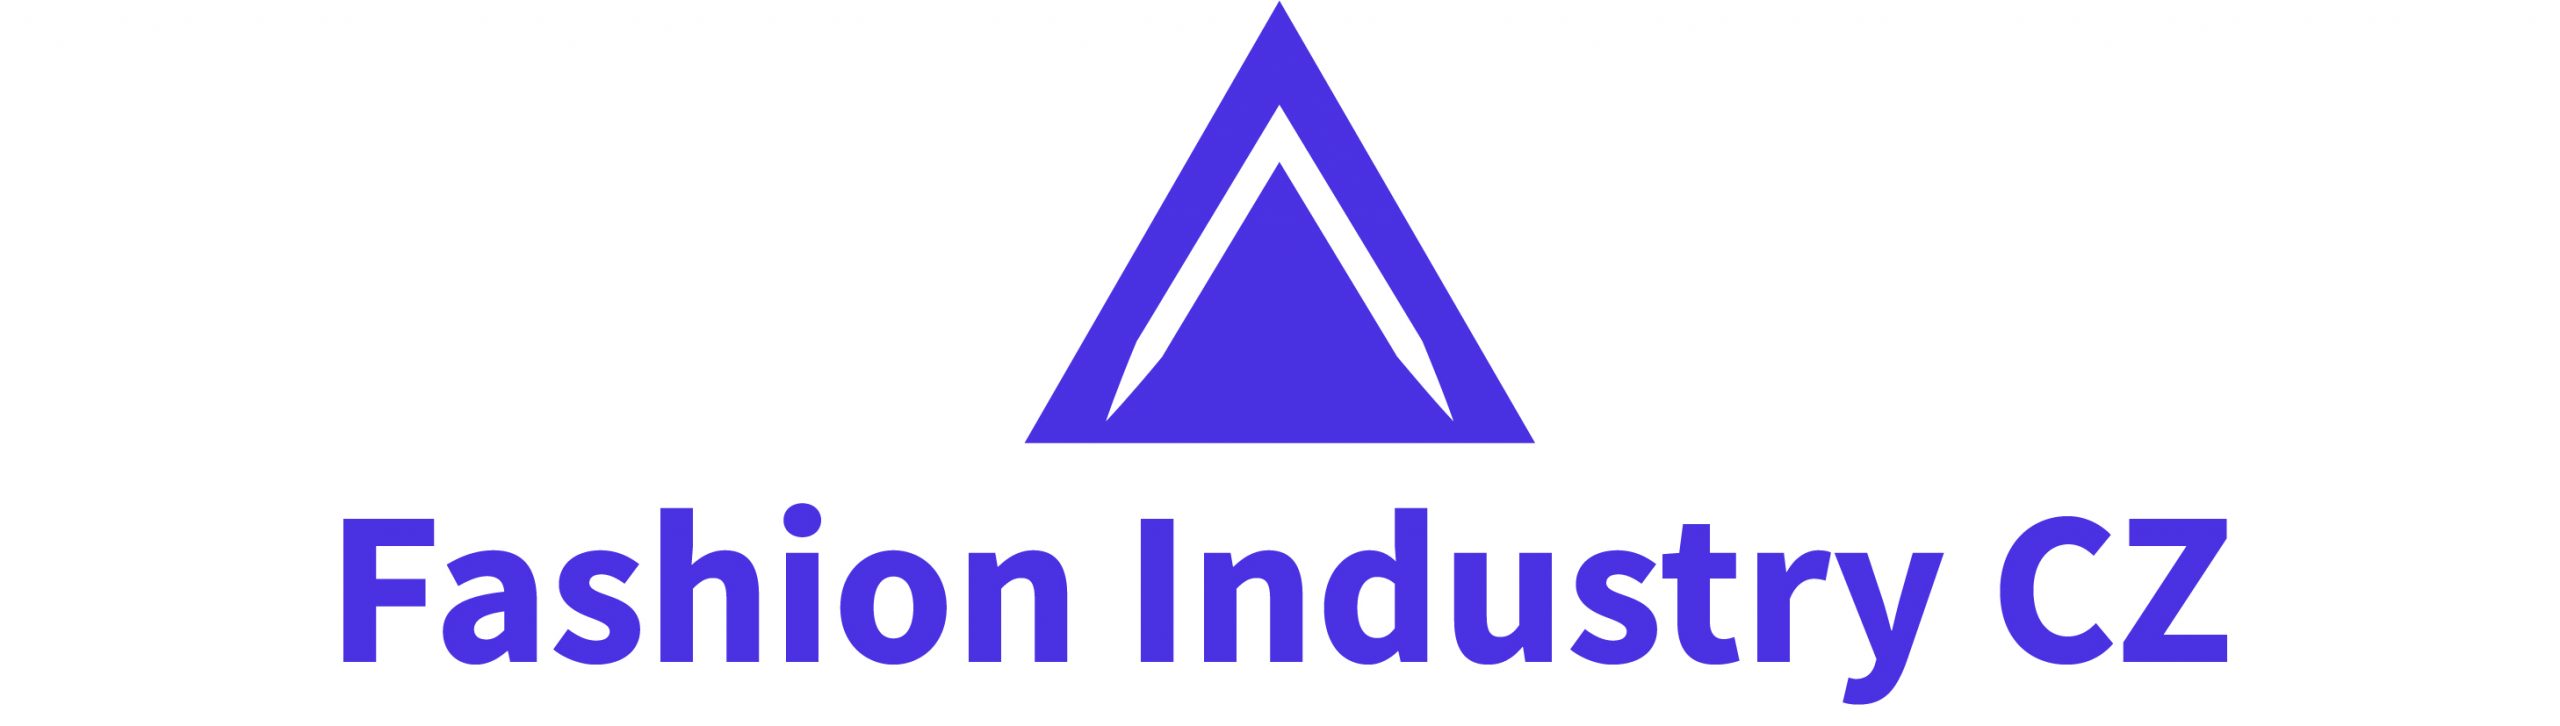 Fashion Industry CZ - logo